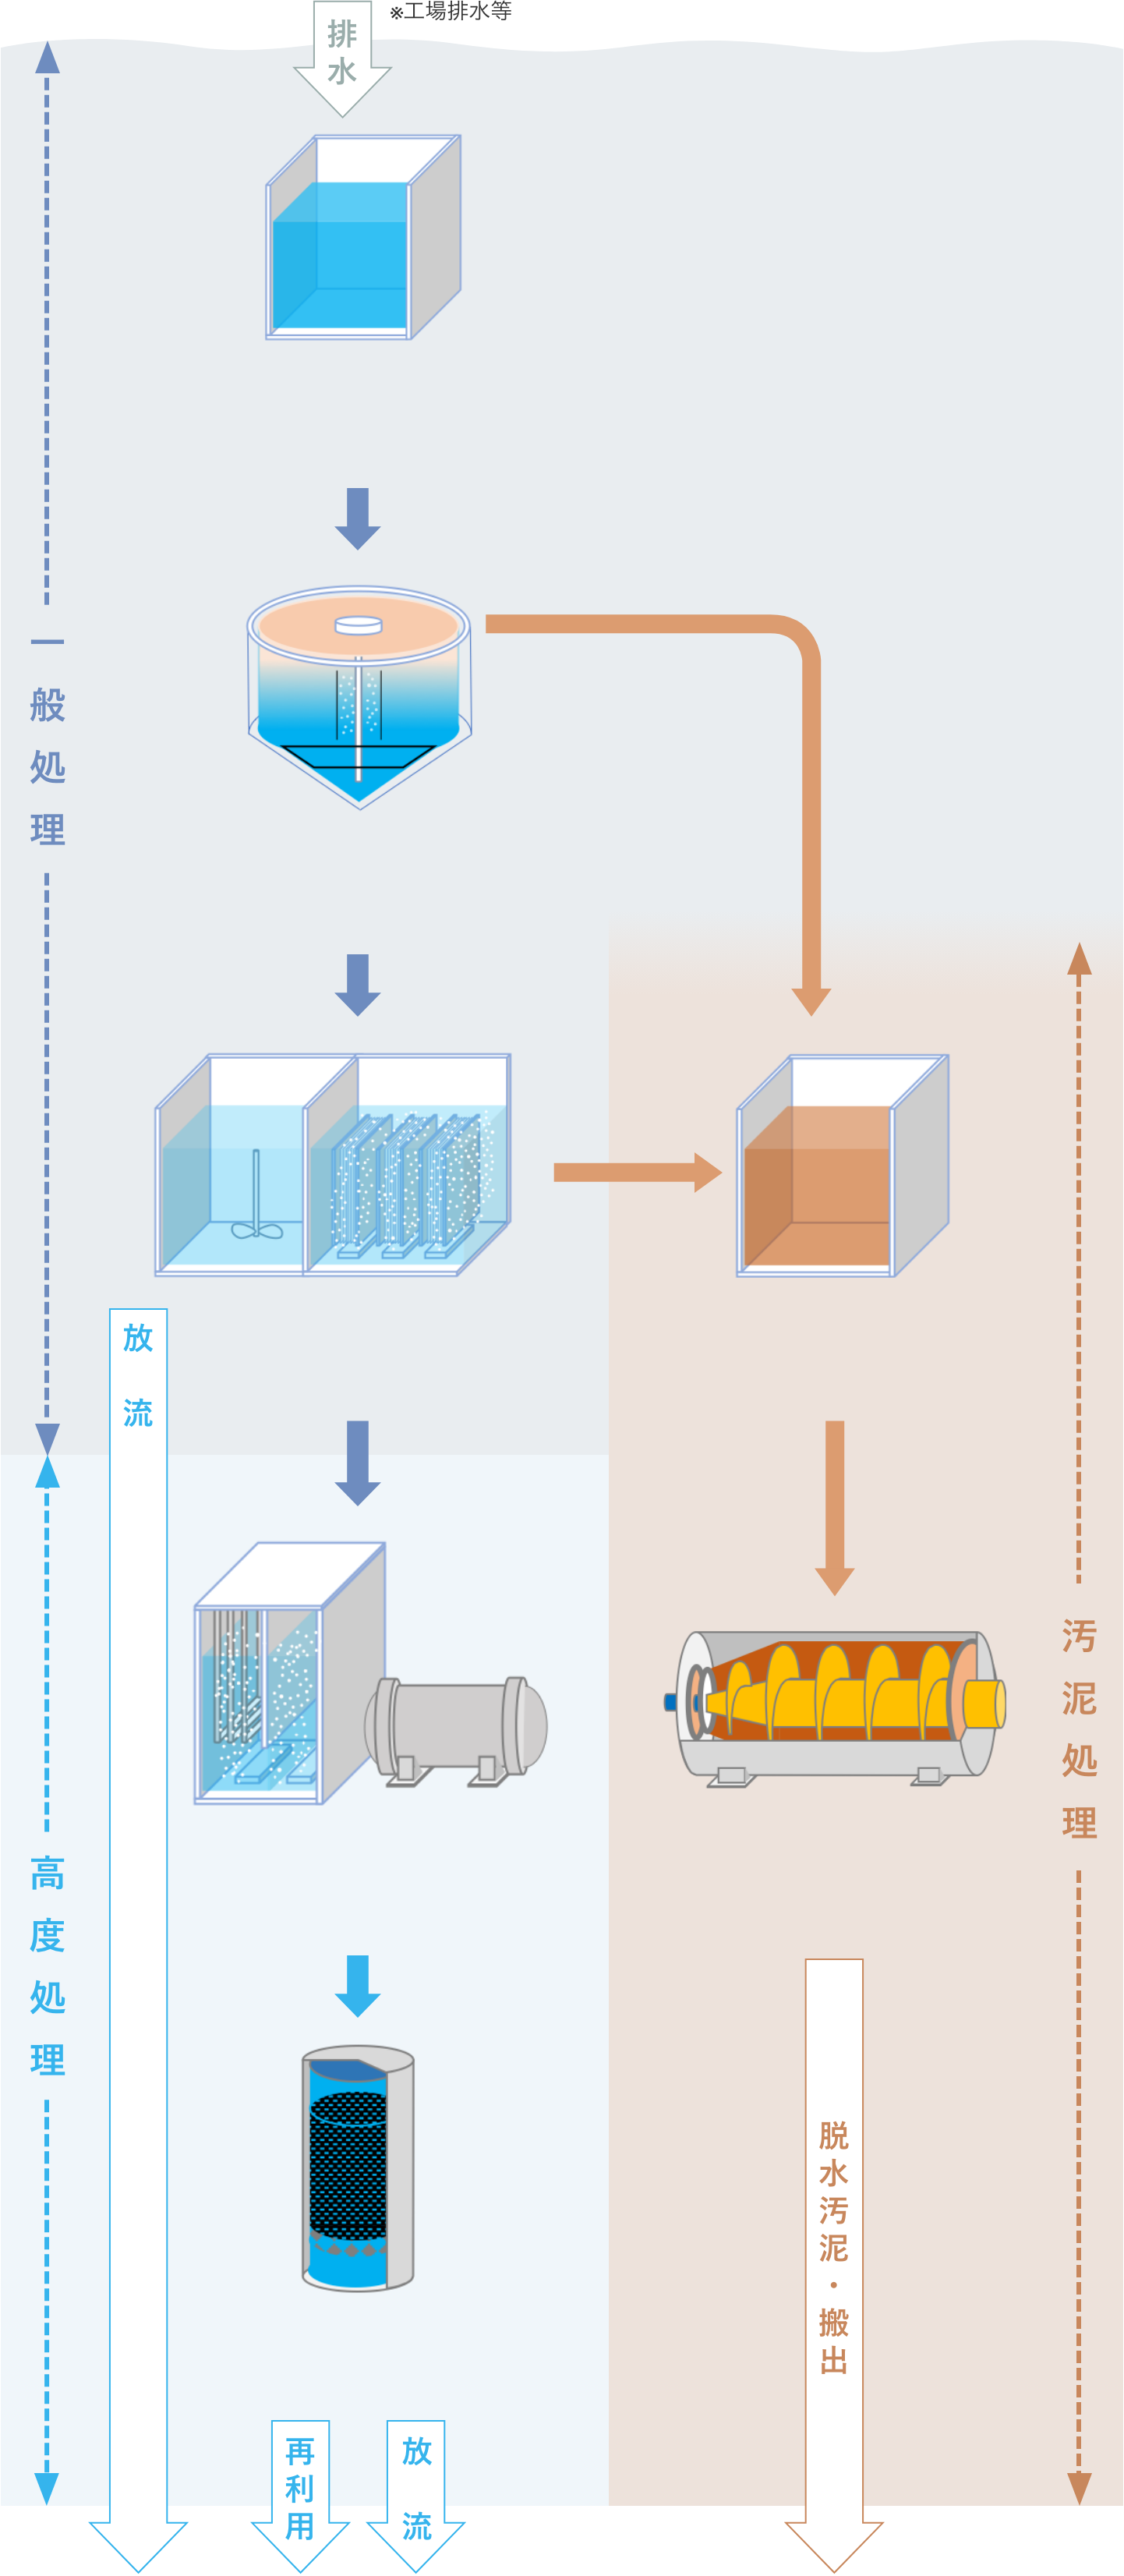 排水処理のプロセスフロー例